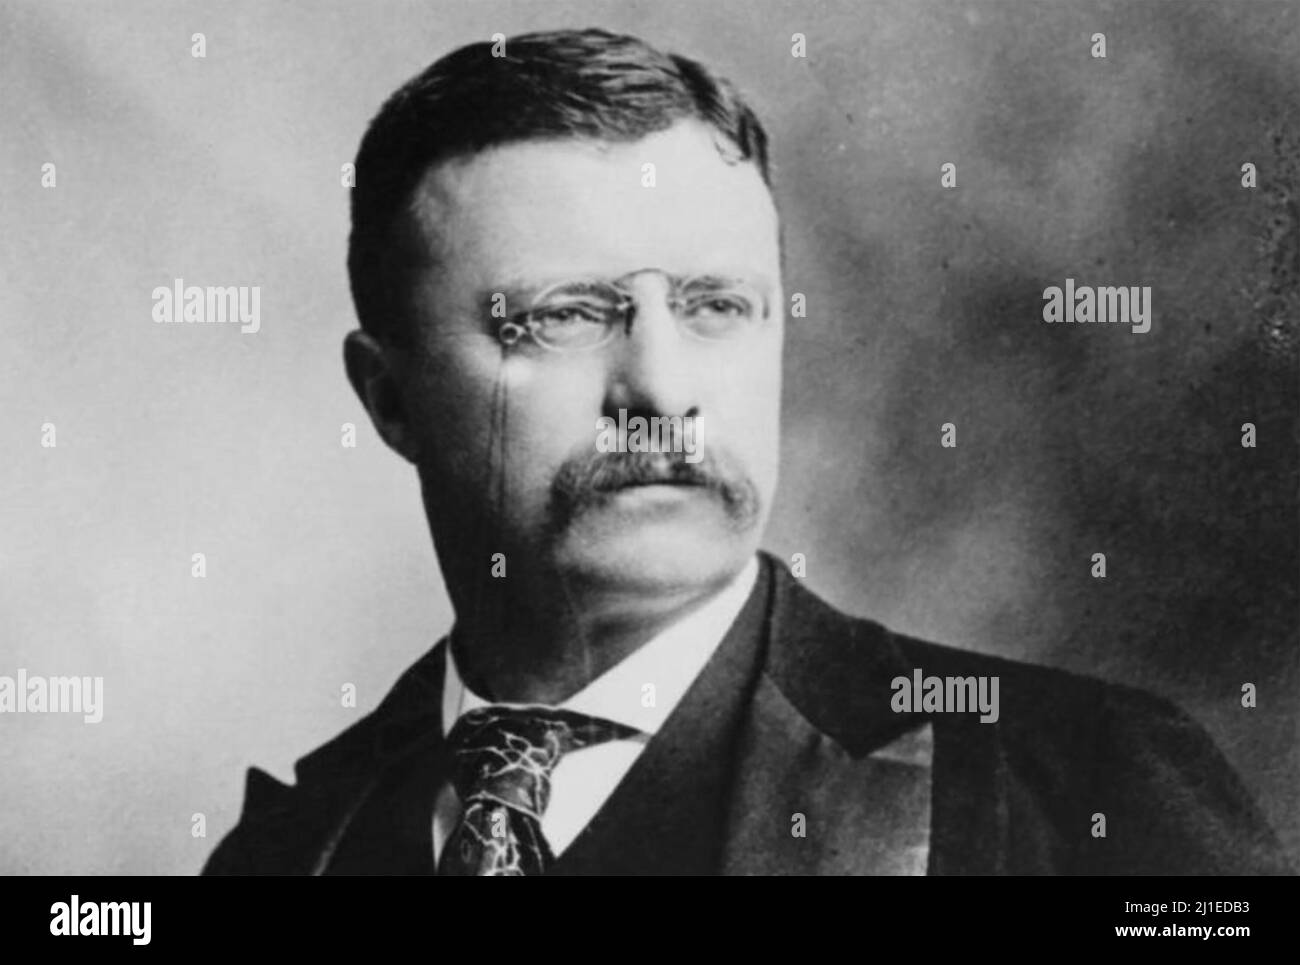 THEODORE ROOSEVELT (1858-1919) 26th Président des États-Unis, vers 1904. Banque D'Images